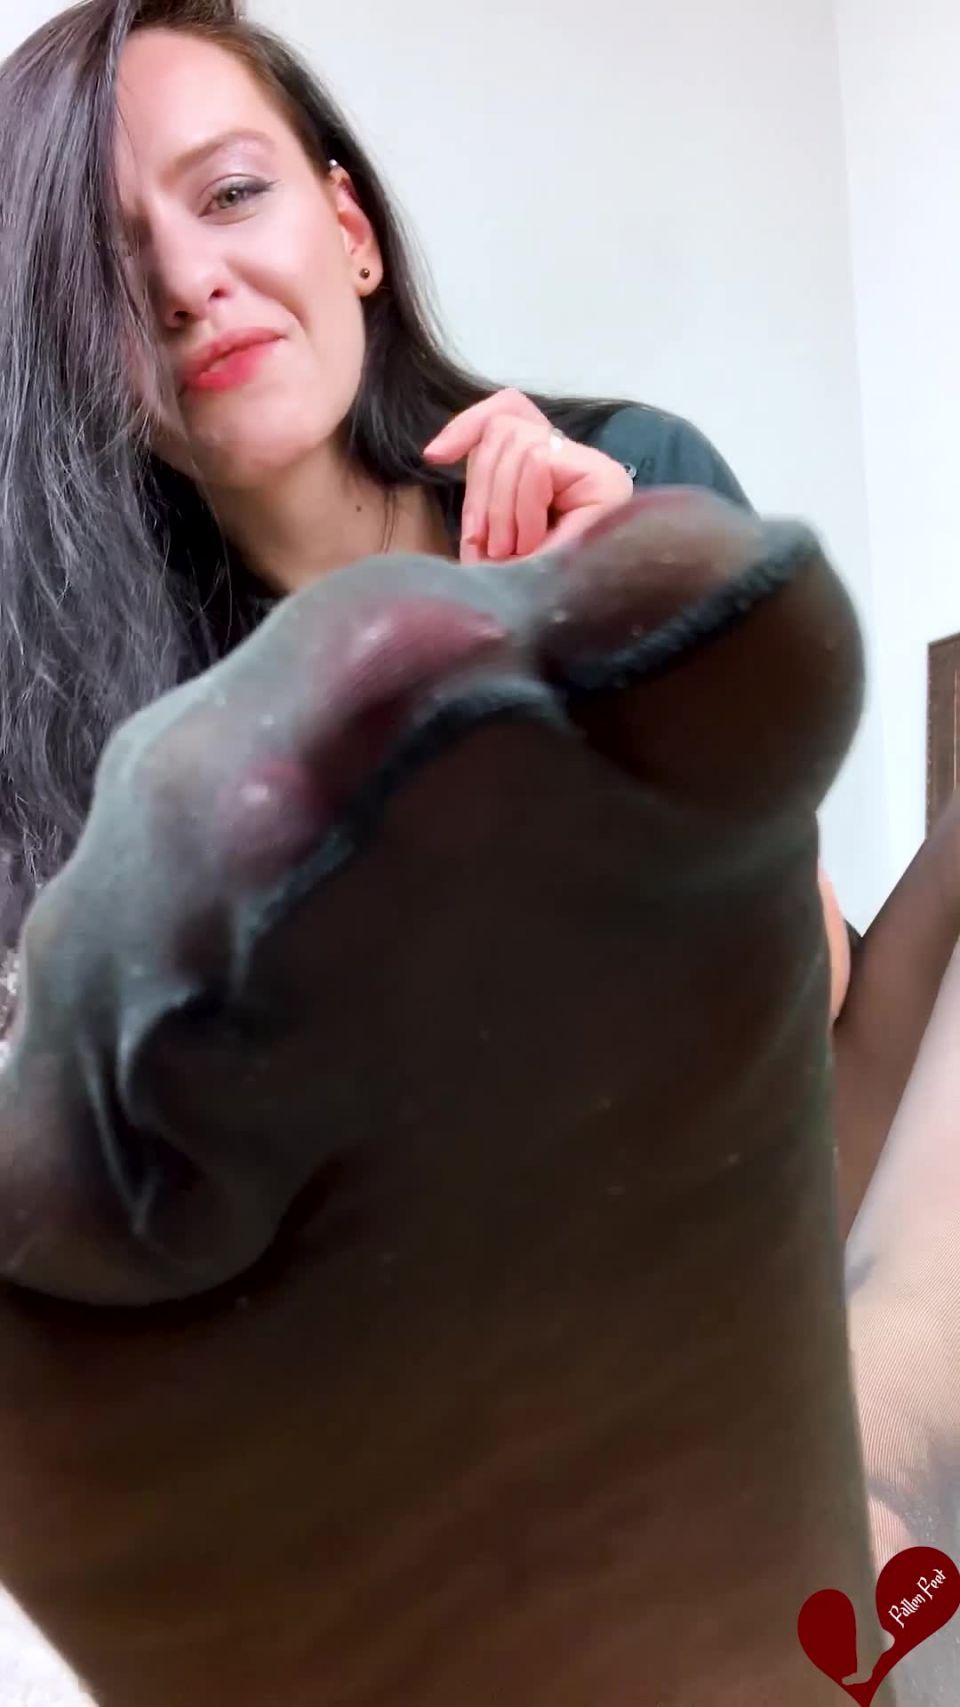 free adult video 41 kelli staxxx femdom Fallen Feet - A Little Treat for my Dog, femdom pov on pussy licking